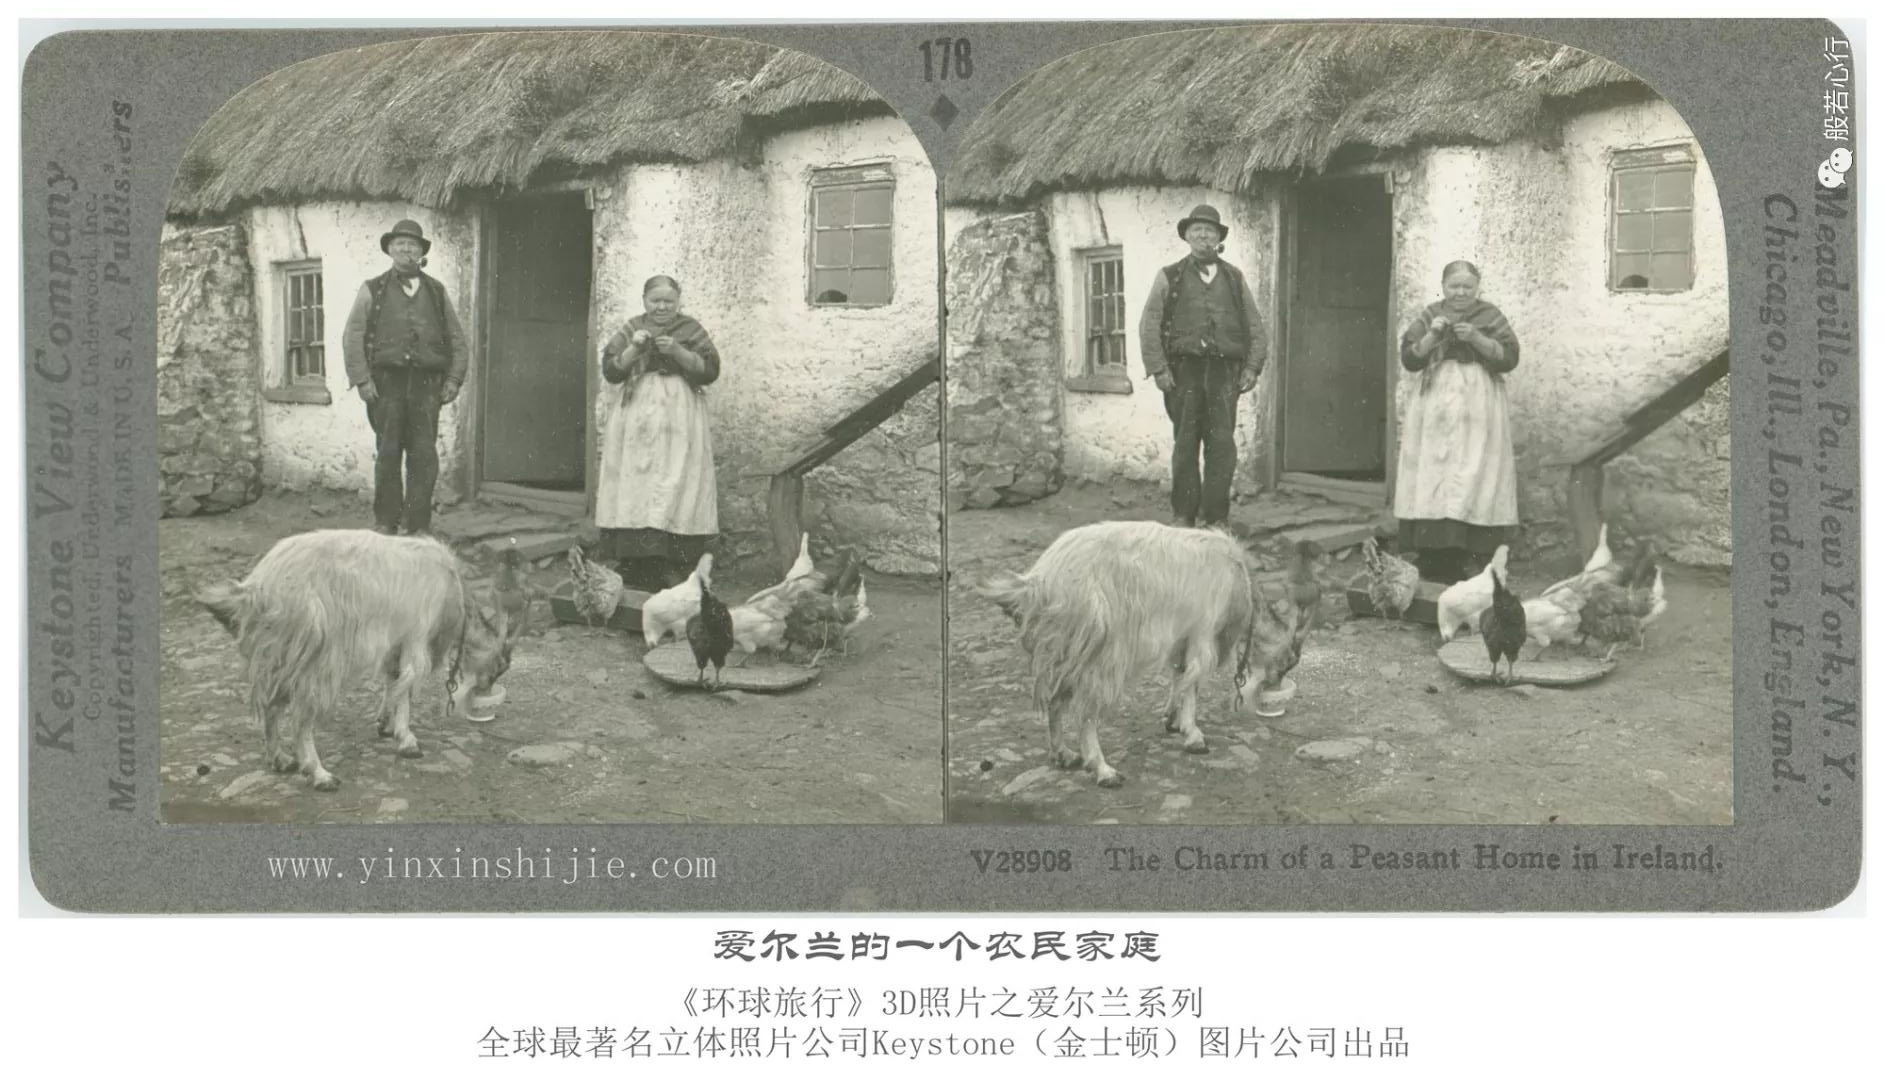 爱尔兰的一个农民家庭-1936年3D版《环球旅行》立体照片